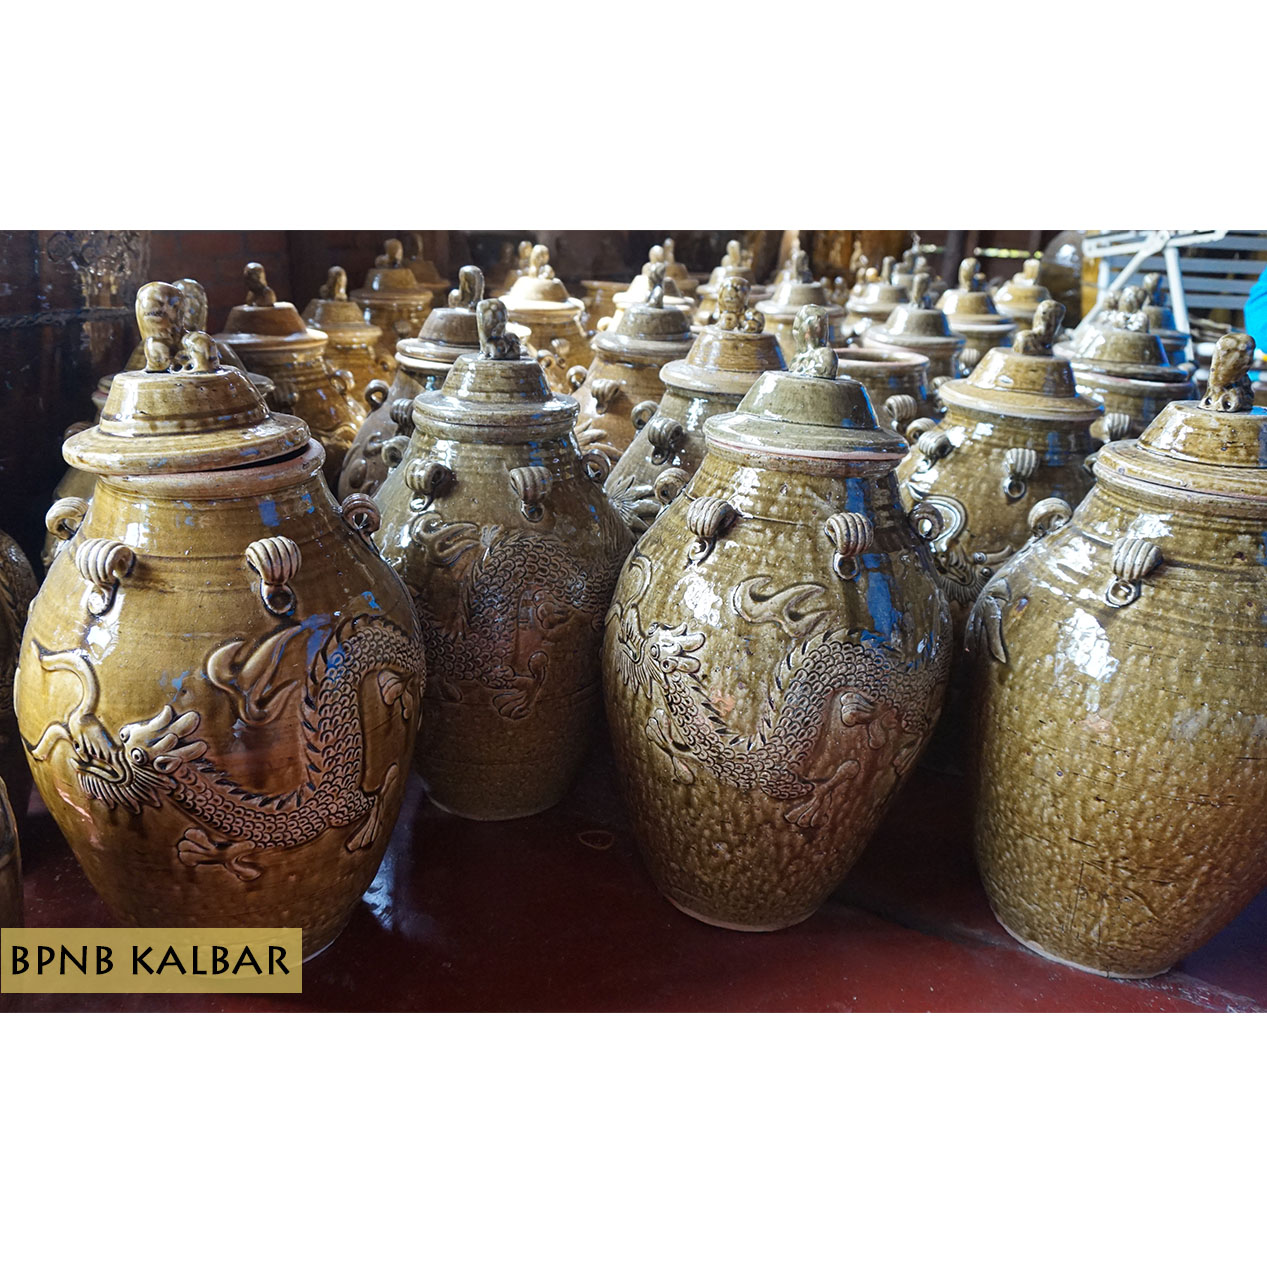 Pembuatan Keramik Di Singkawang Berada Di Wilayah Sakkok Telah Dilakukan Secara Turun Temurun